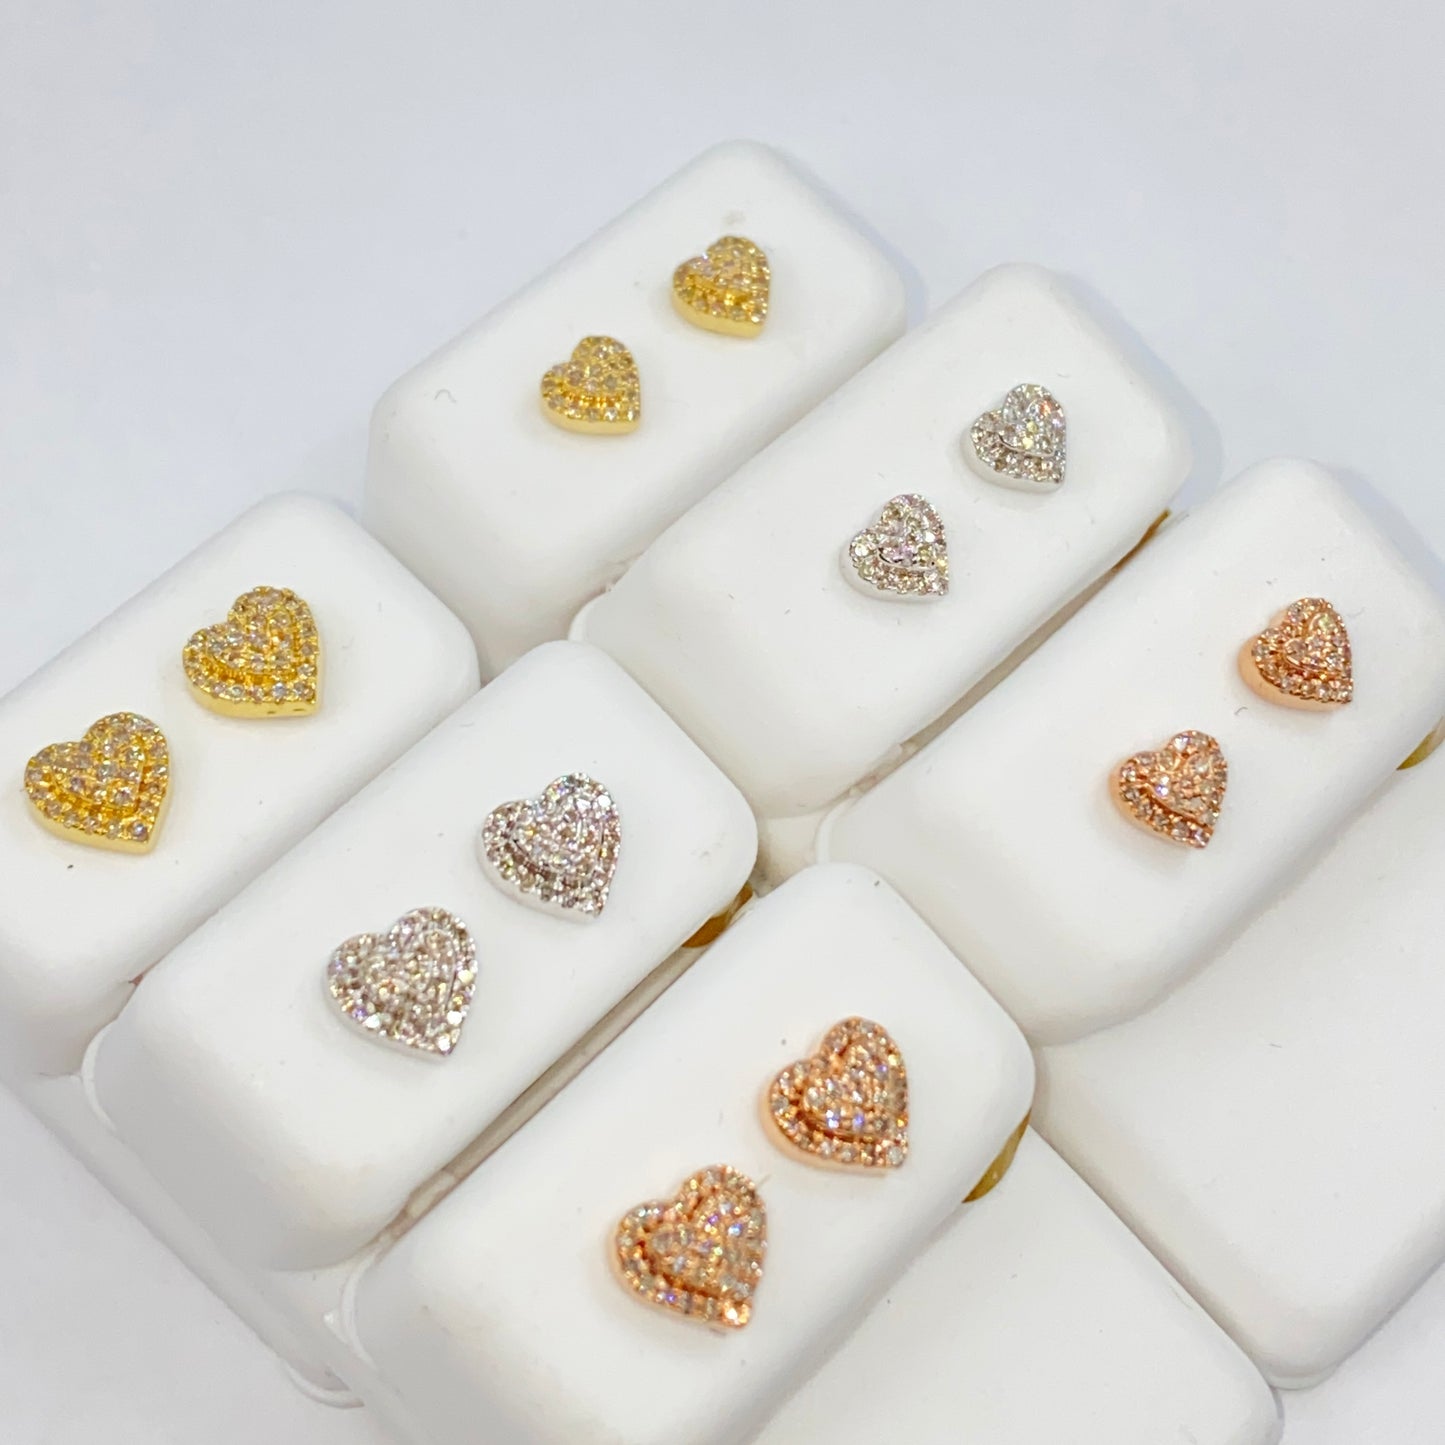 10K Classic Heart Diamond Earrings